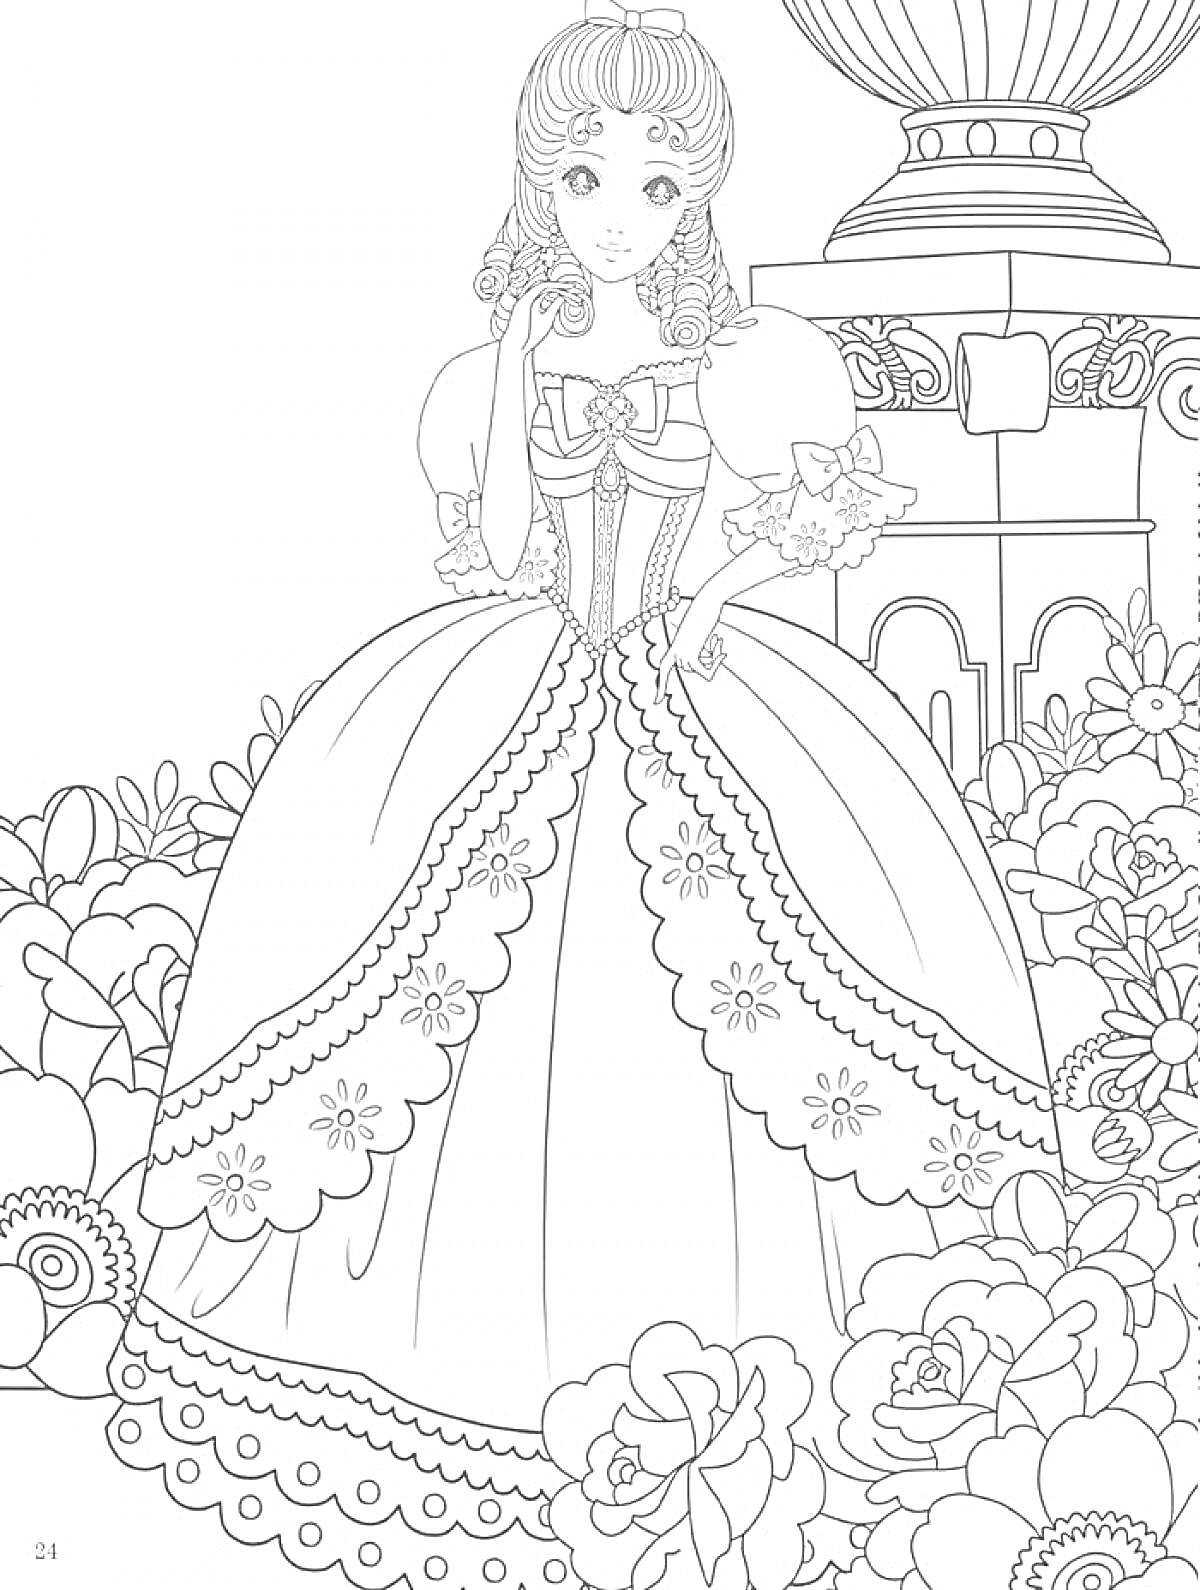 Раскраска Принцесса в пышном платье среди цветов у фонтана